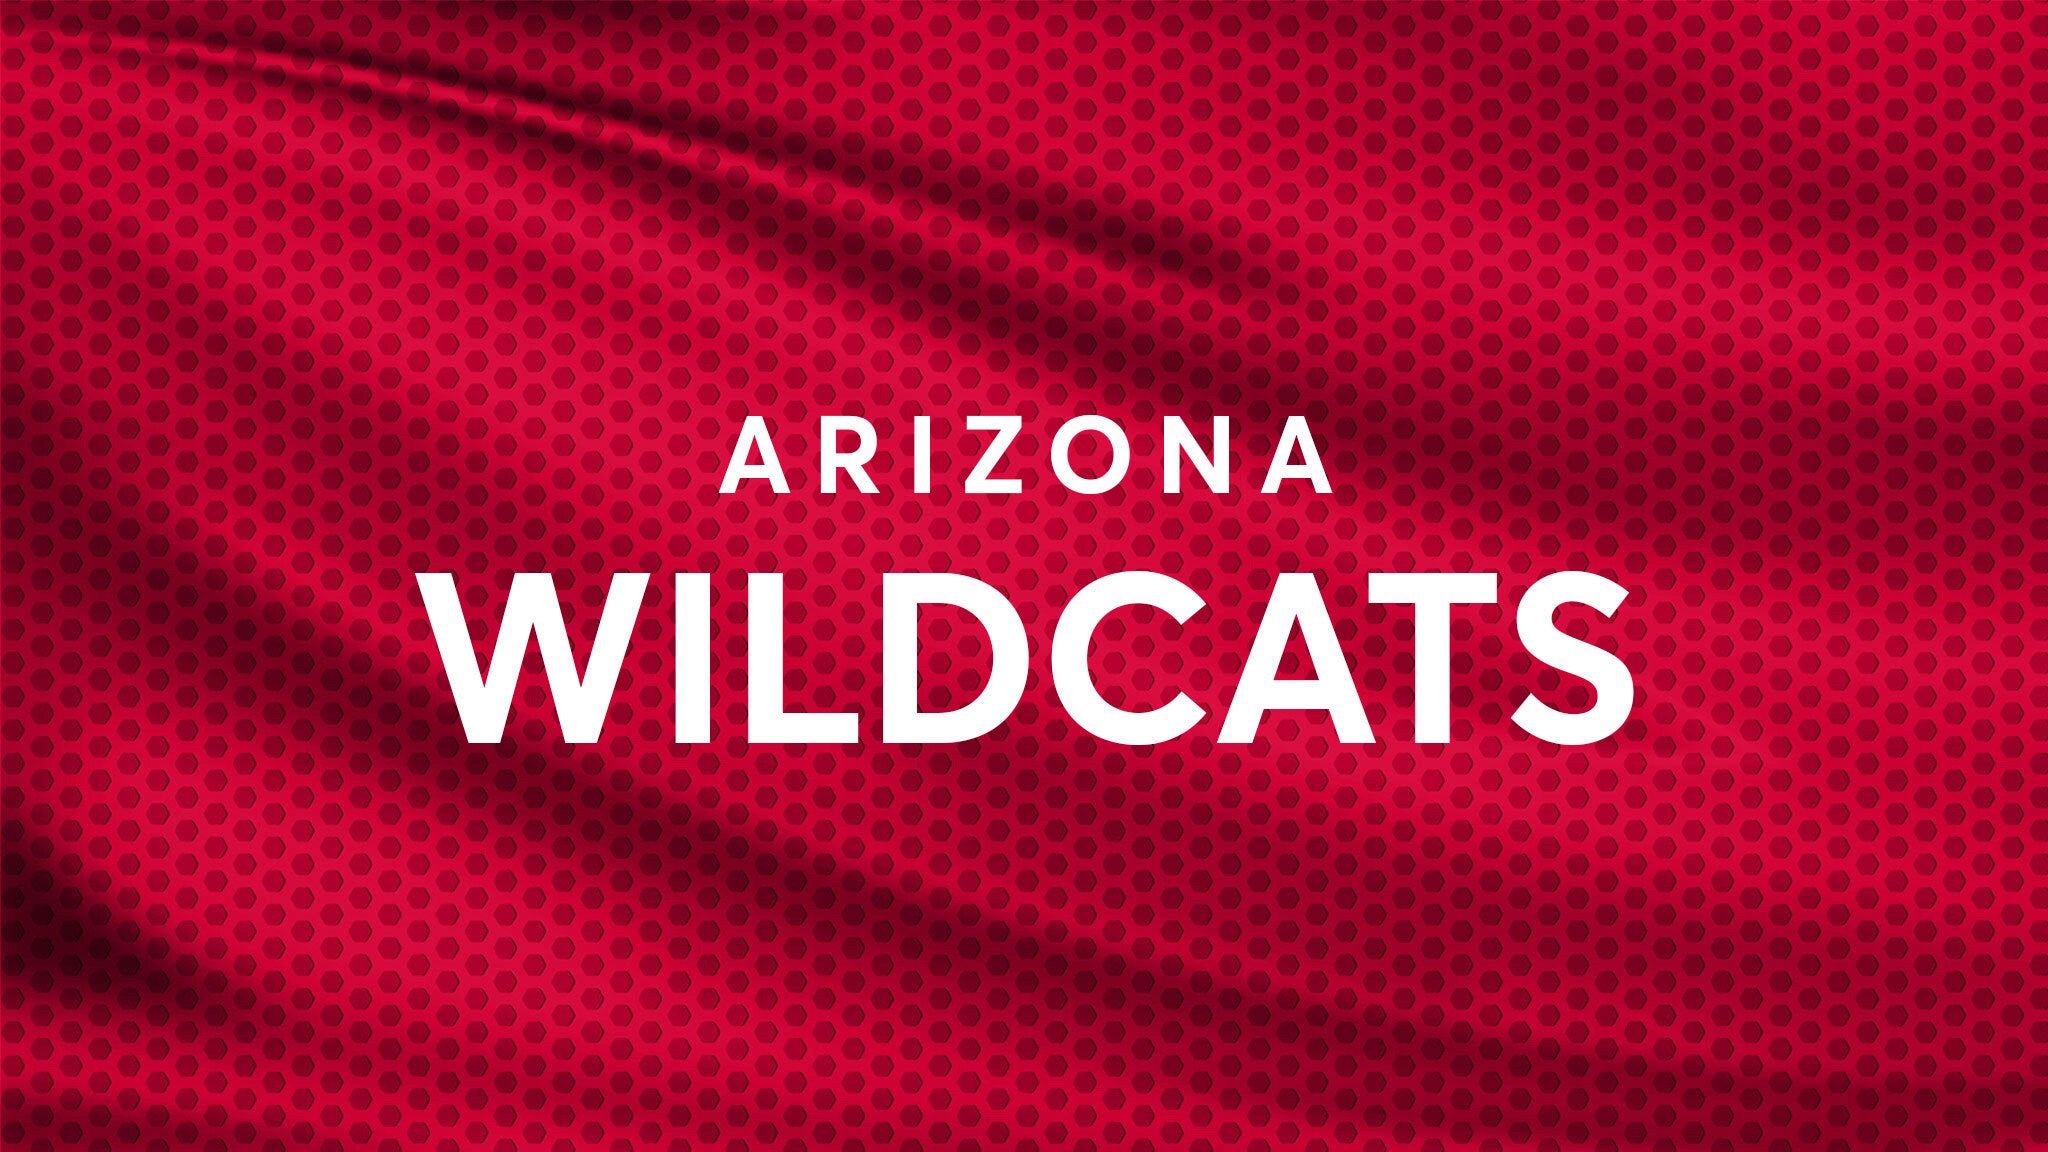 Arizona Wildcats Football vs. Colorado Buffaloes Football hero